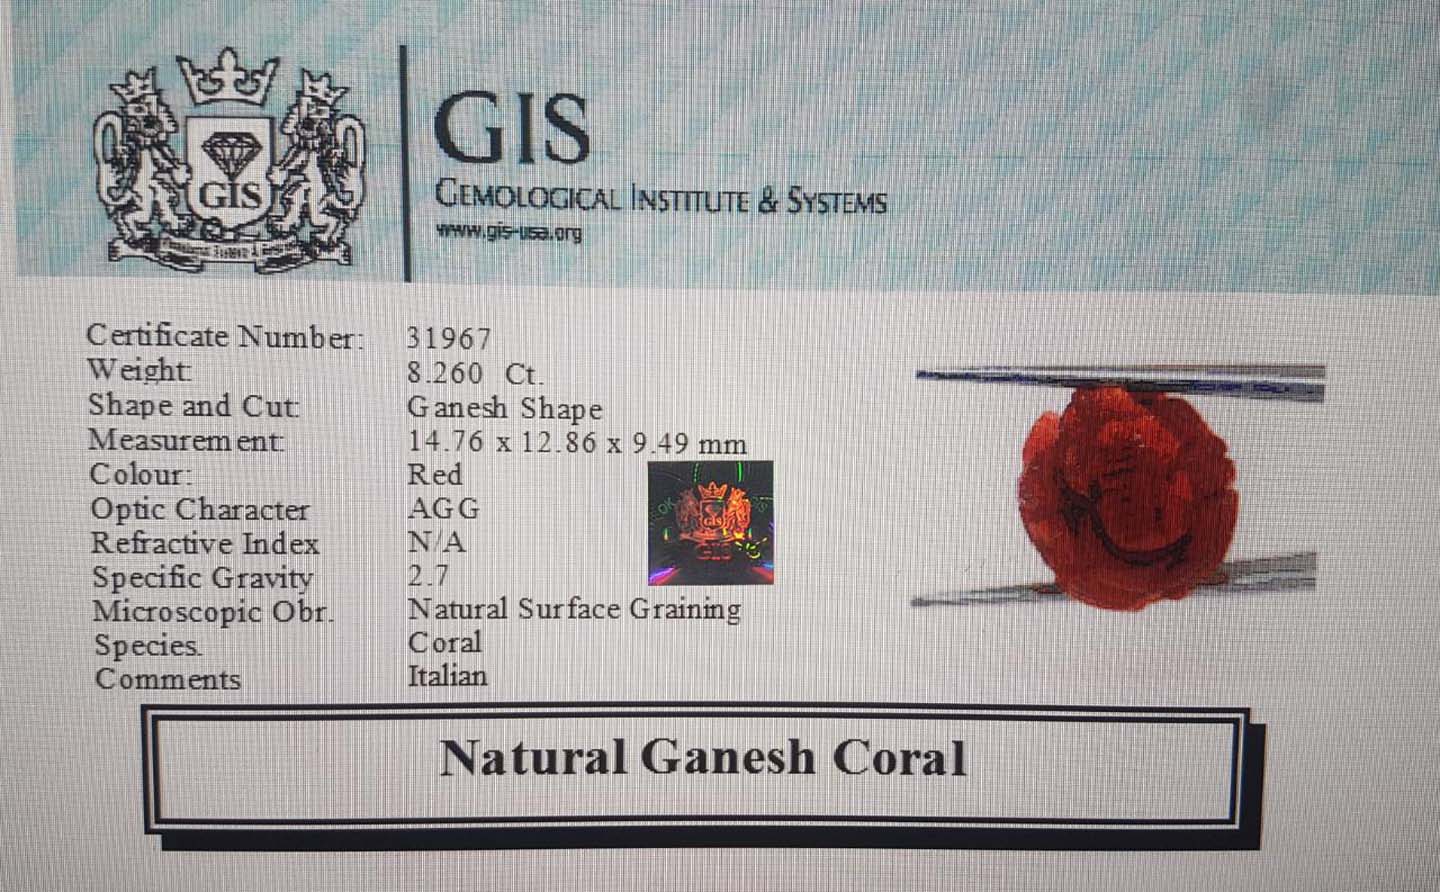 Ganesh Coral 8.26 Ct.